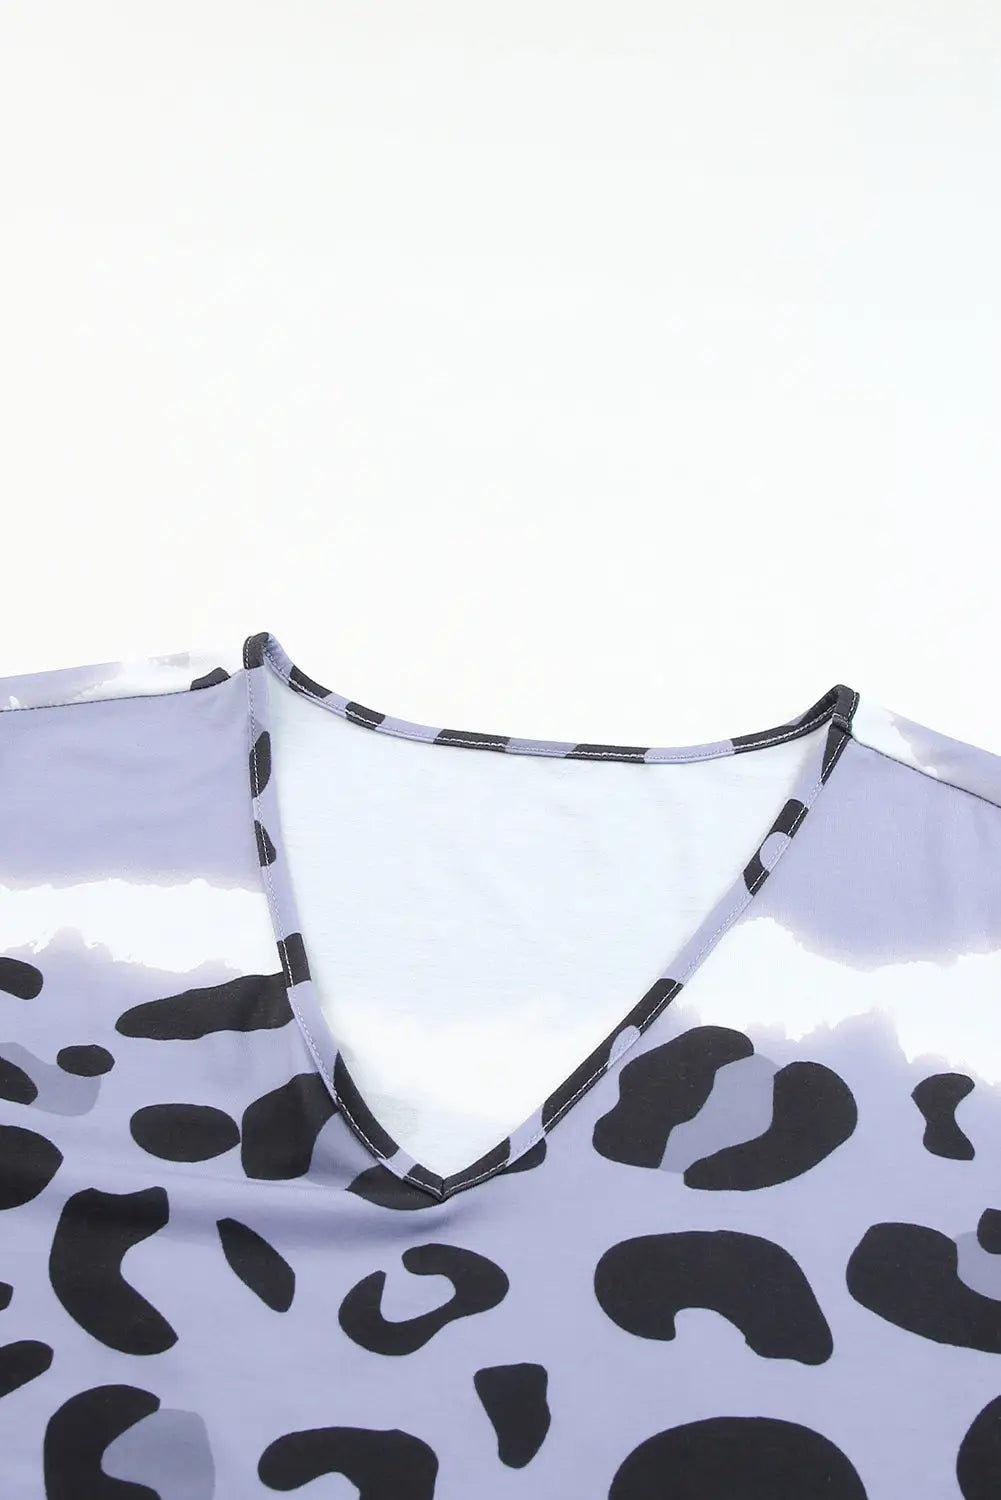 Gray leopard tie dye long sleeve shift dress - dresses